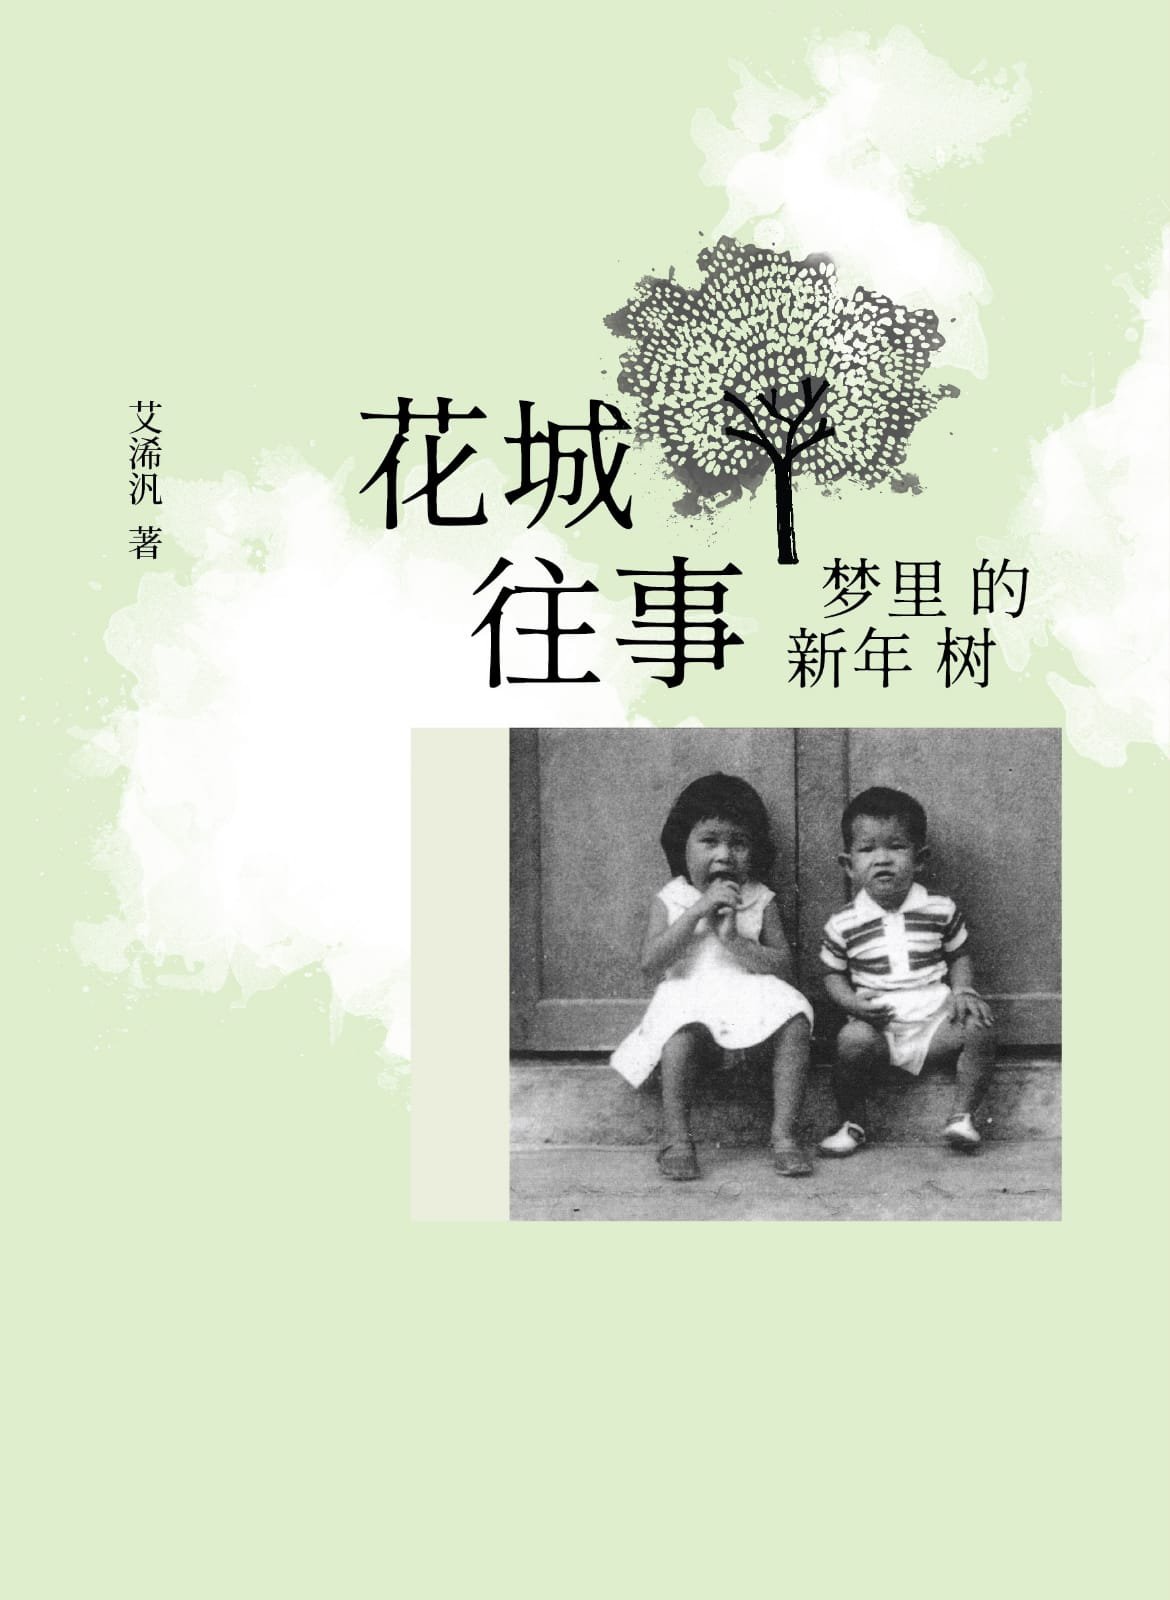 今年6月，艾浠汎即将出版第一本书《花城往事—梦里的新年树》，书中记录了她在芙蓉成长的点滴。